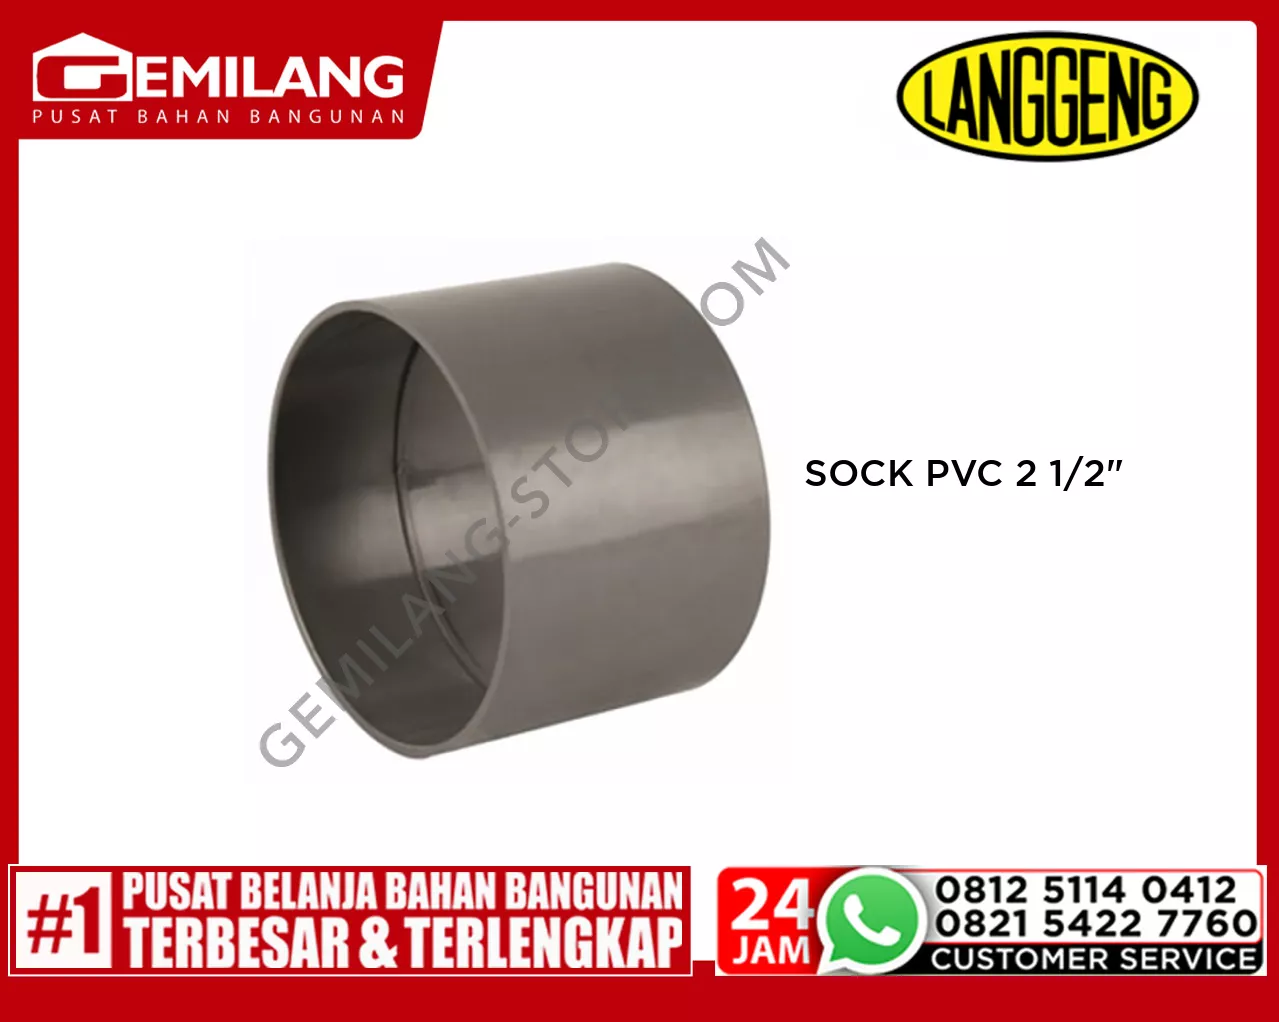 LANGGENG SOCK PVC 2 1/2inch